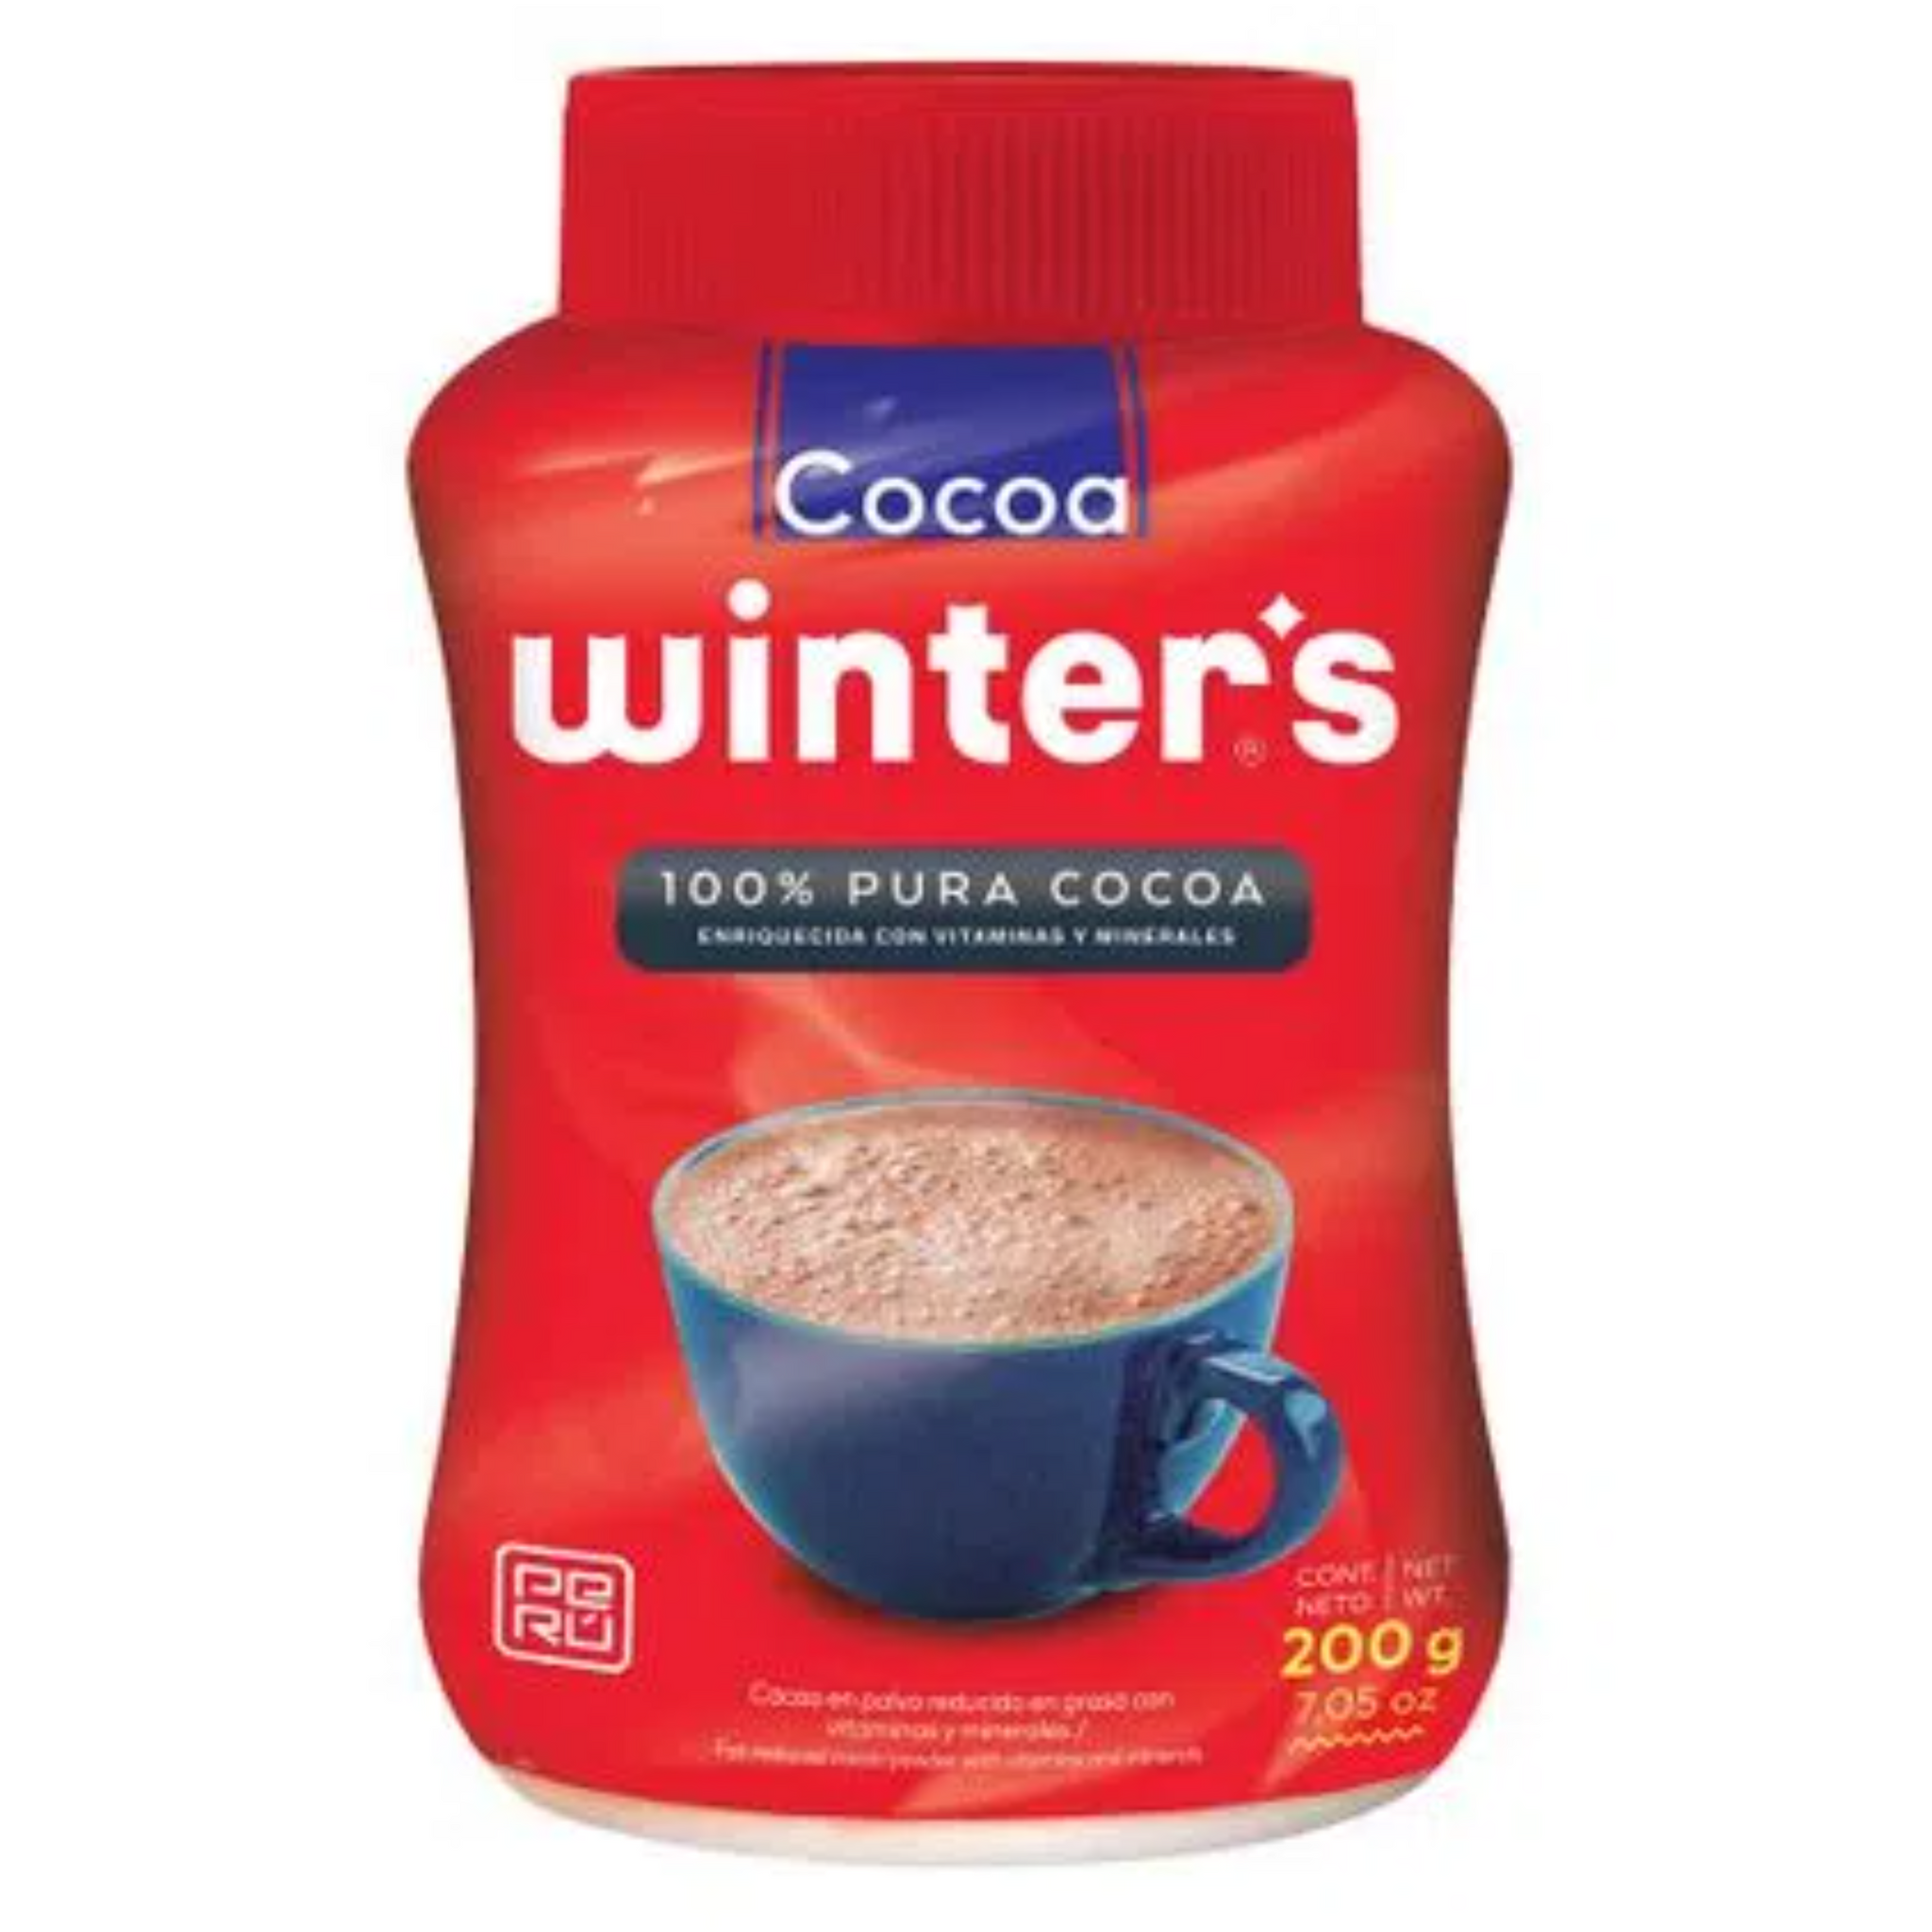 COCOA WINTER'S POTE